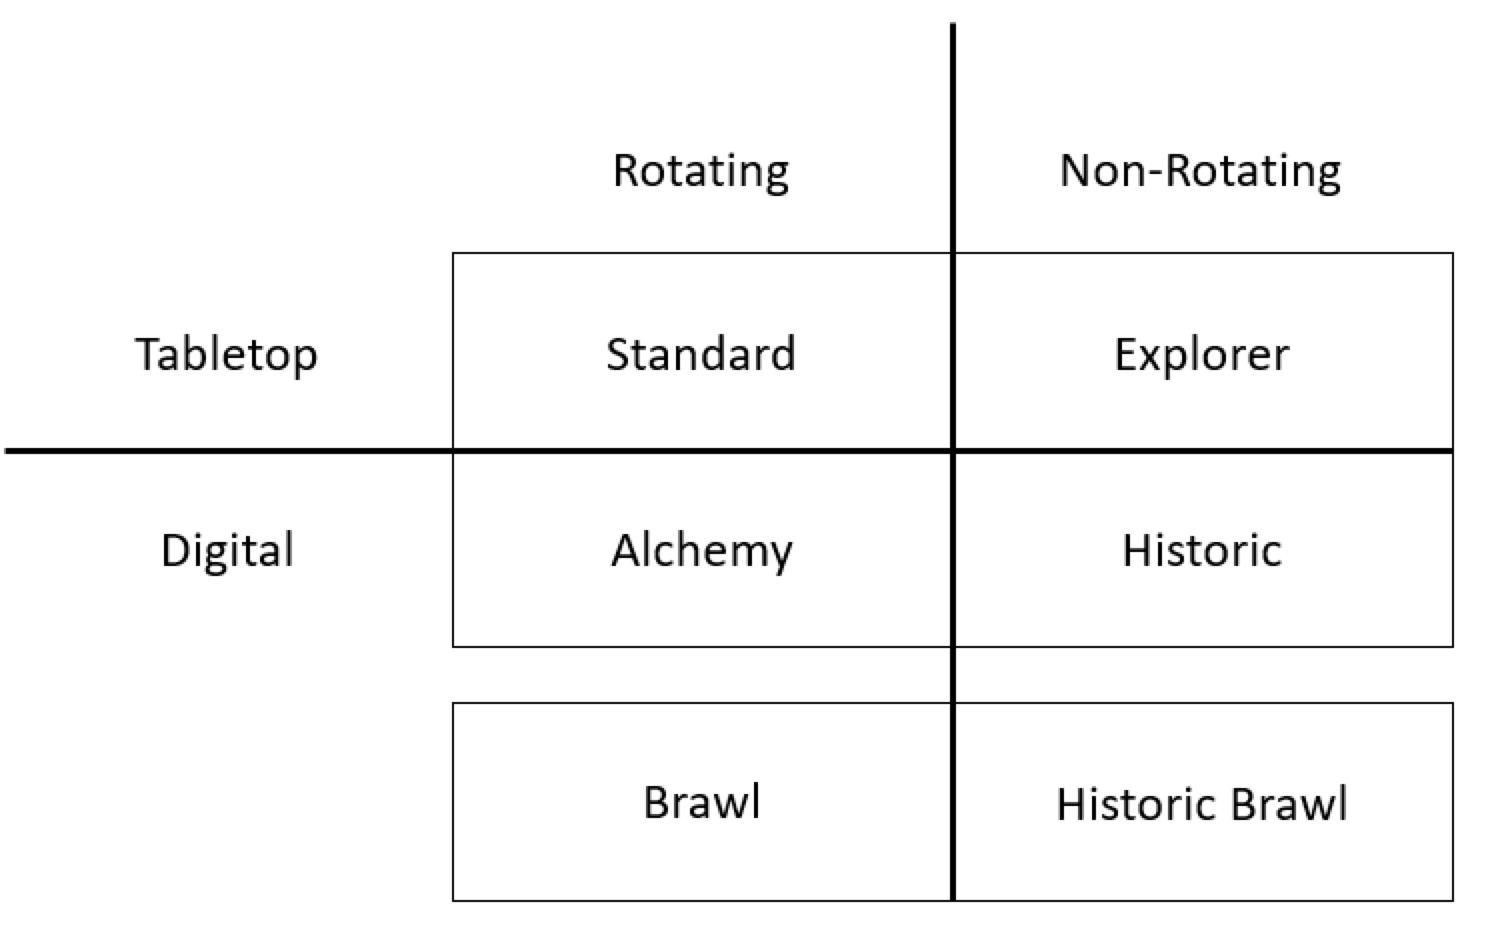 Grafico che mostra i formati da tavolo e digitali raggruppati a seconda di se si tratta di formati a rotazione (Standard, Alchemy e Brawl) o senza rotazione (Explorer, Historic e Historic Brawl)